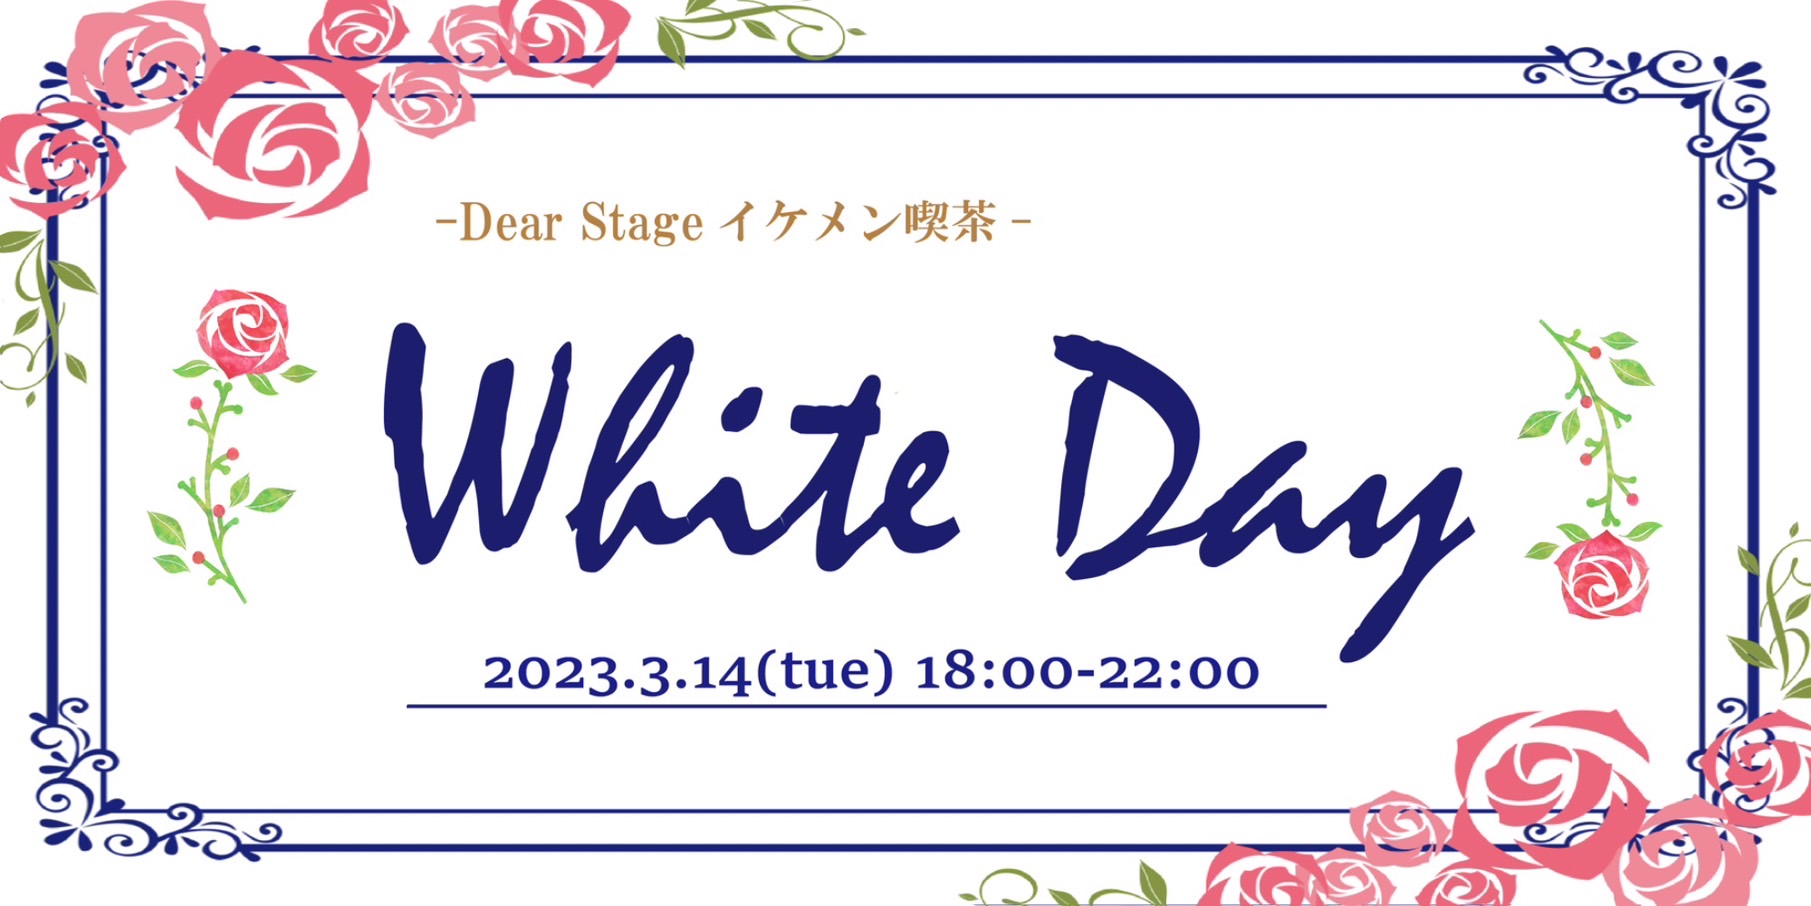 「White Day」